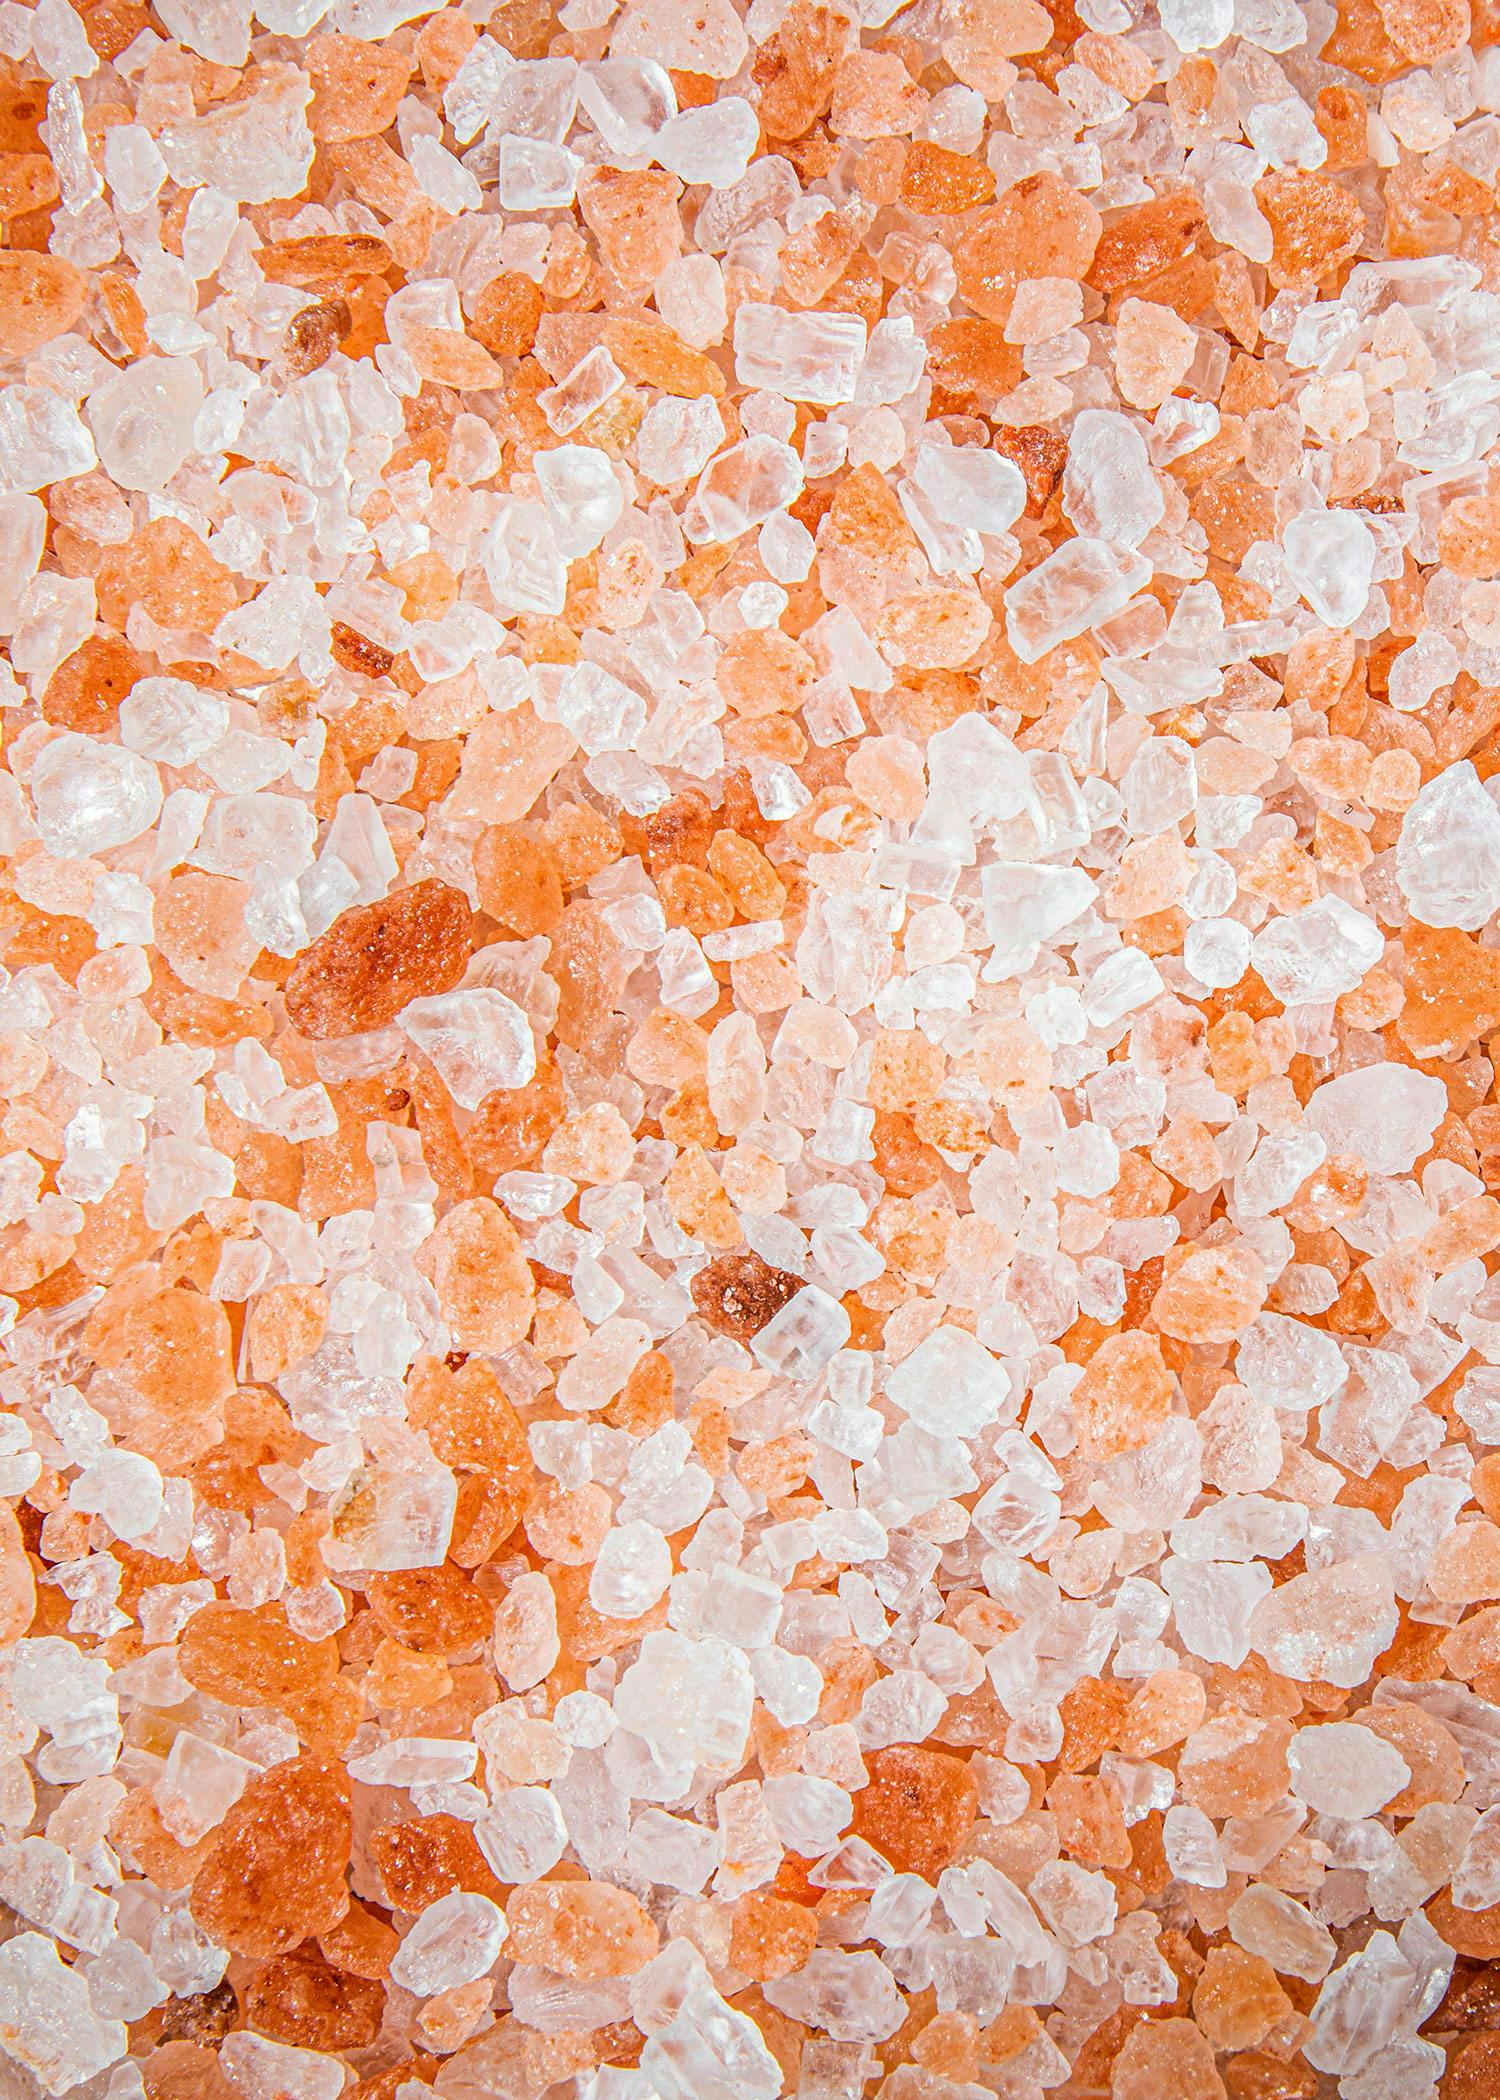 Wie entsteht eigentlich Salz?